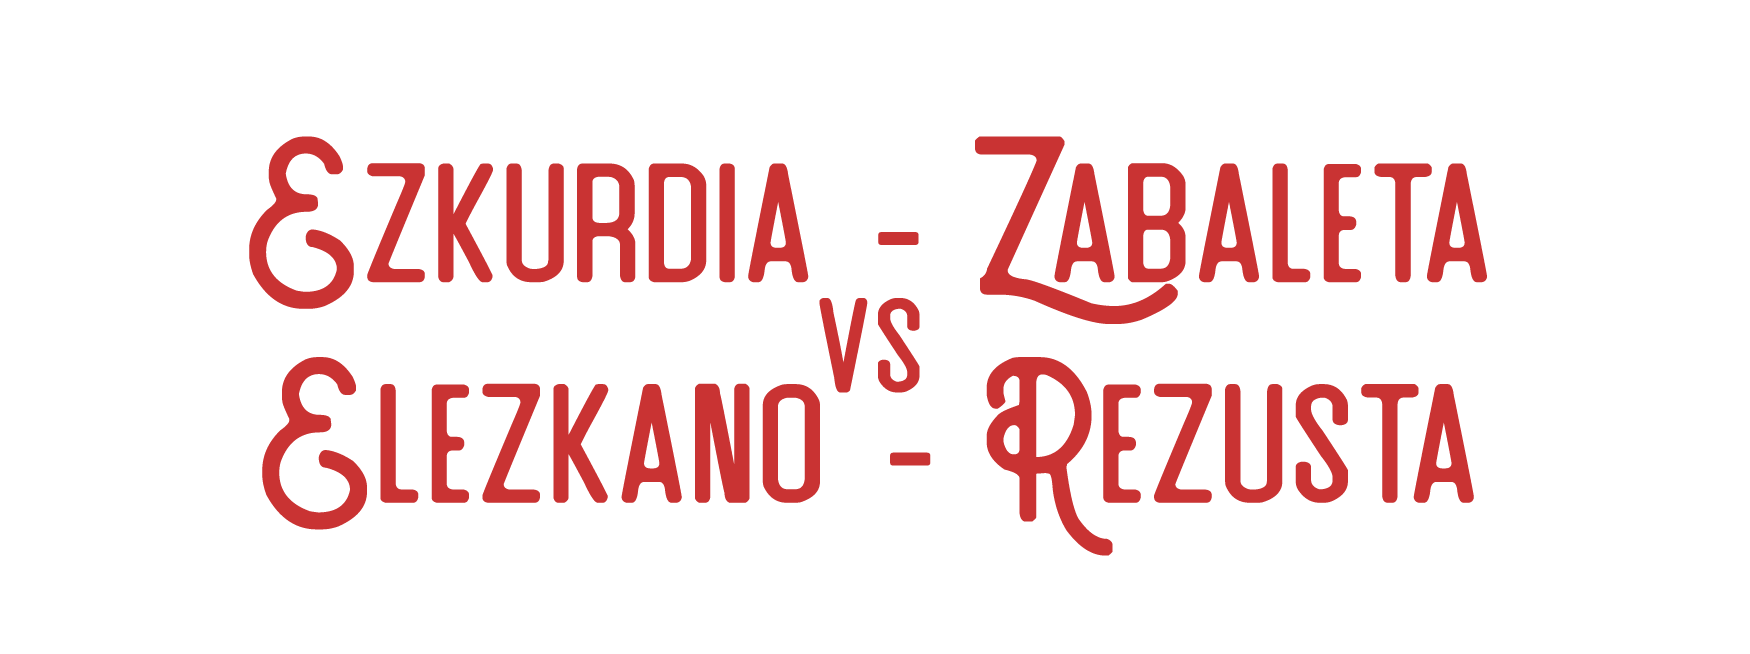 Ezkurdia - Zabaleta vs Elezkano - Rezusta